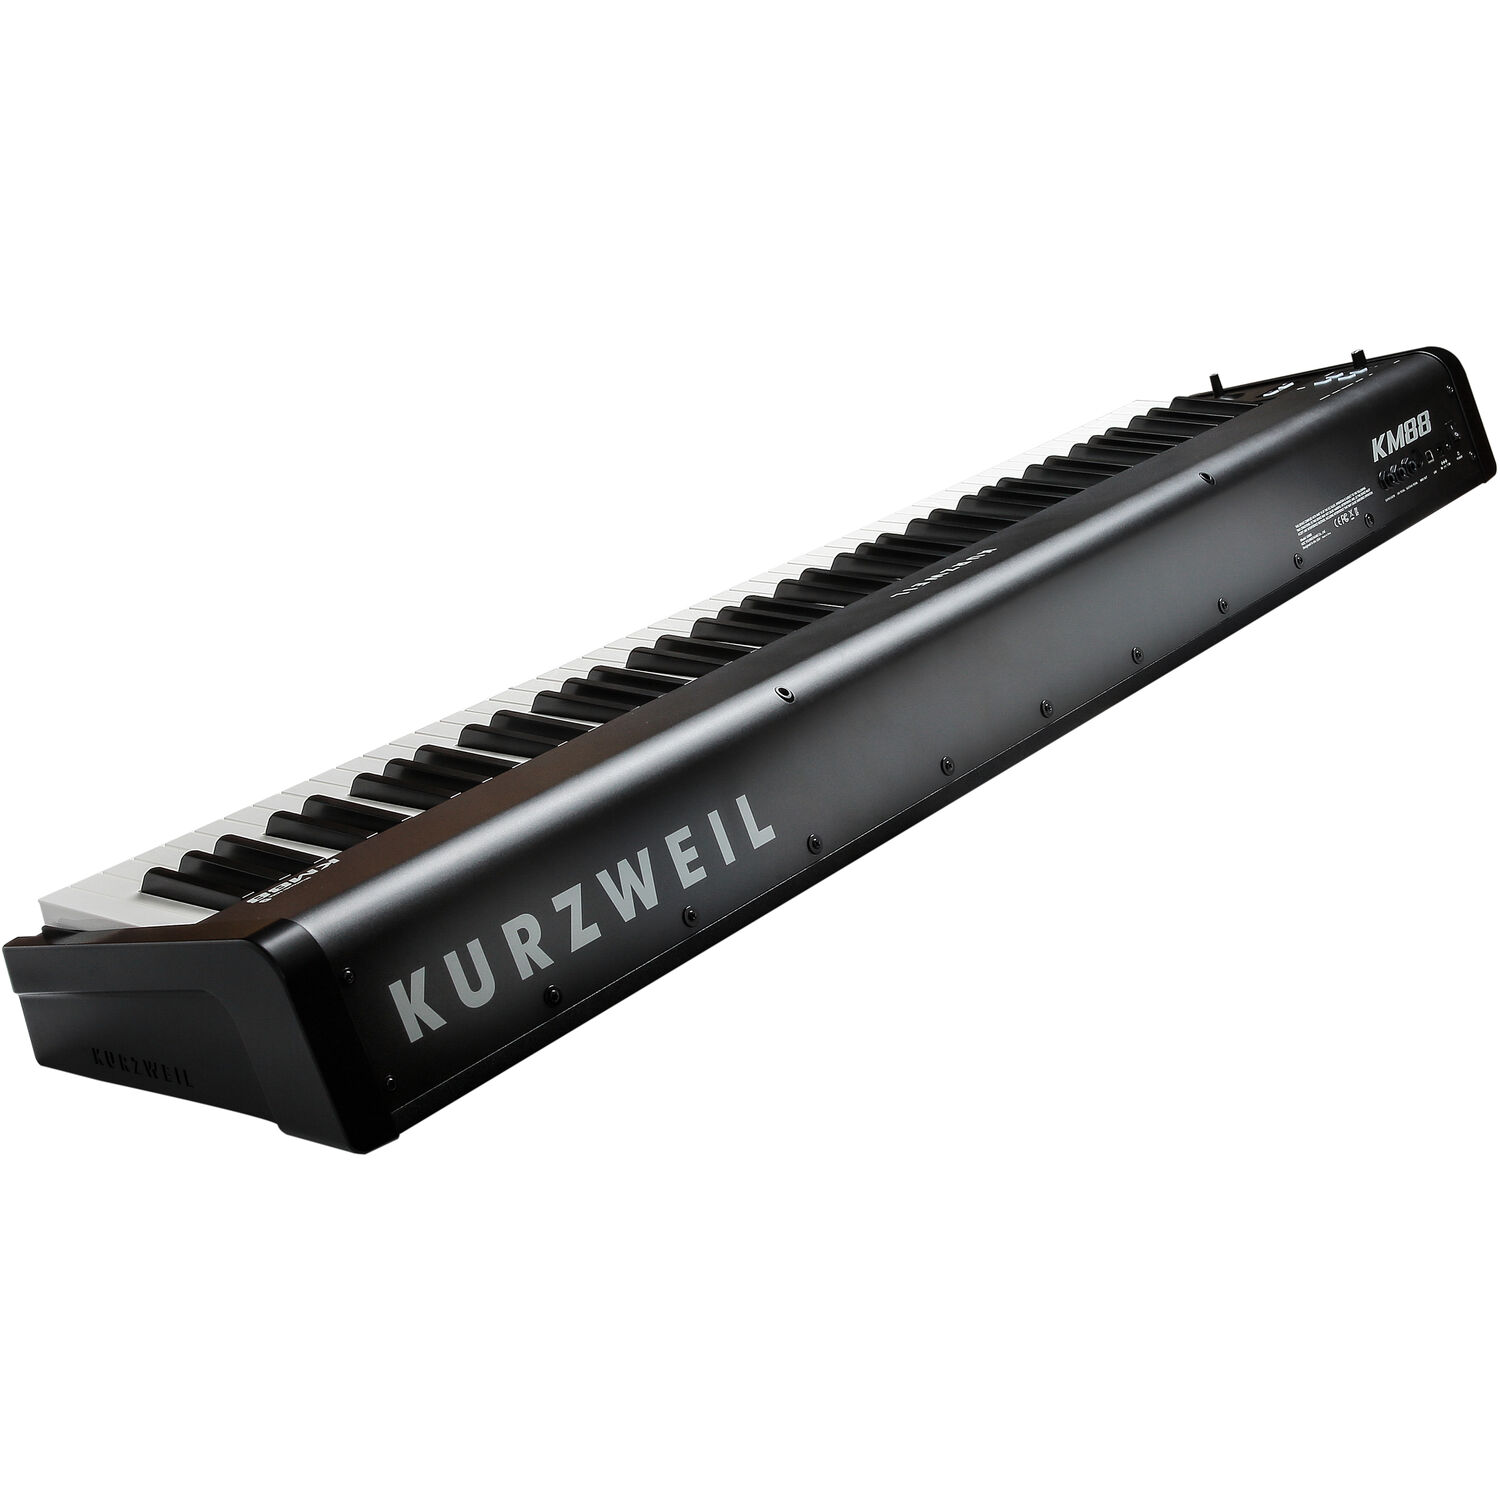 MIDI клавиатура Kurzweil KM88